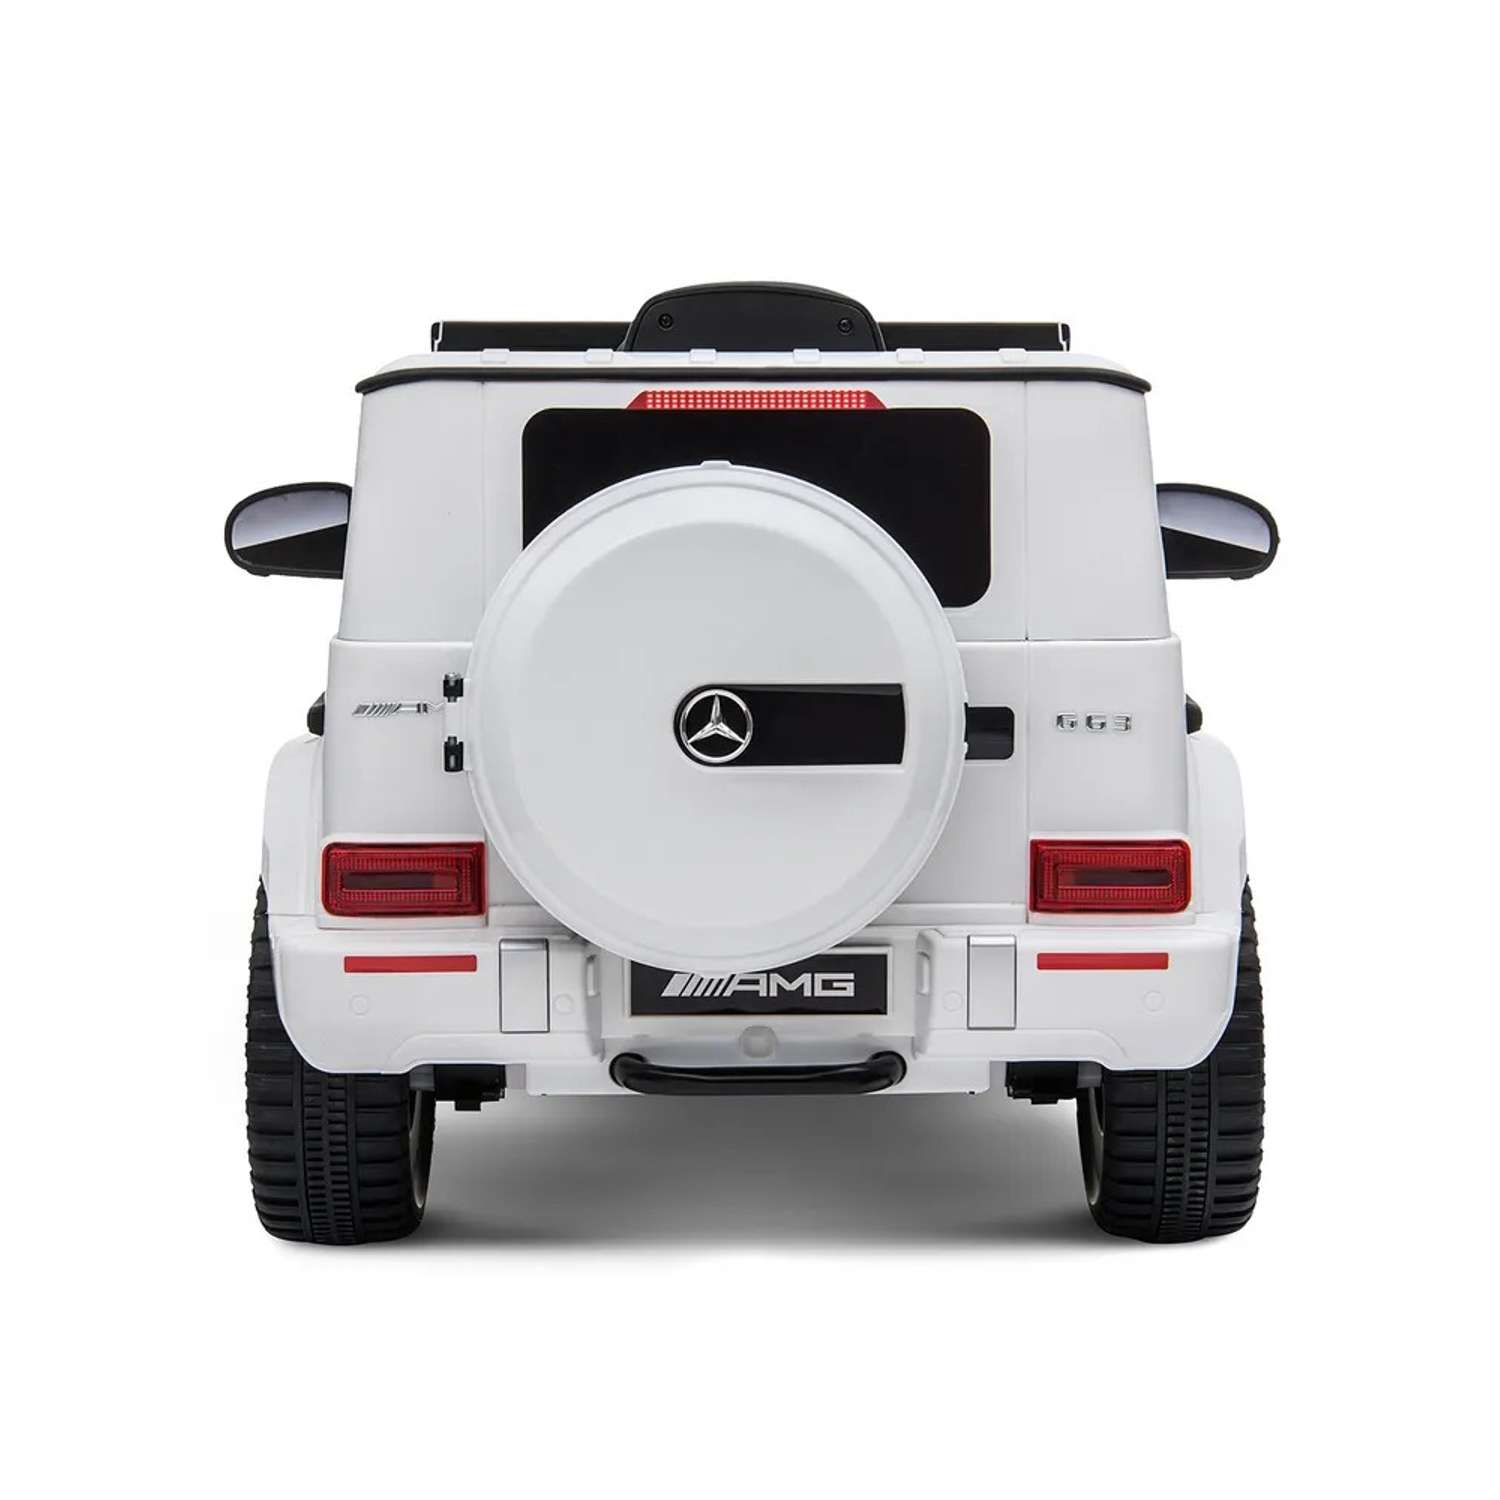 Электромобиль детский CITYRIDE Радиоуправляемый Mercedes Benz AMG на аккумуляторе 12V/4.5AH*1 380*2 2.4GHz свет звук - фото 8